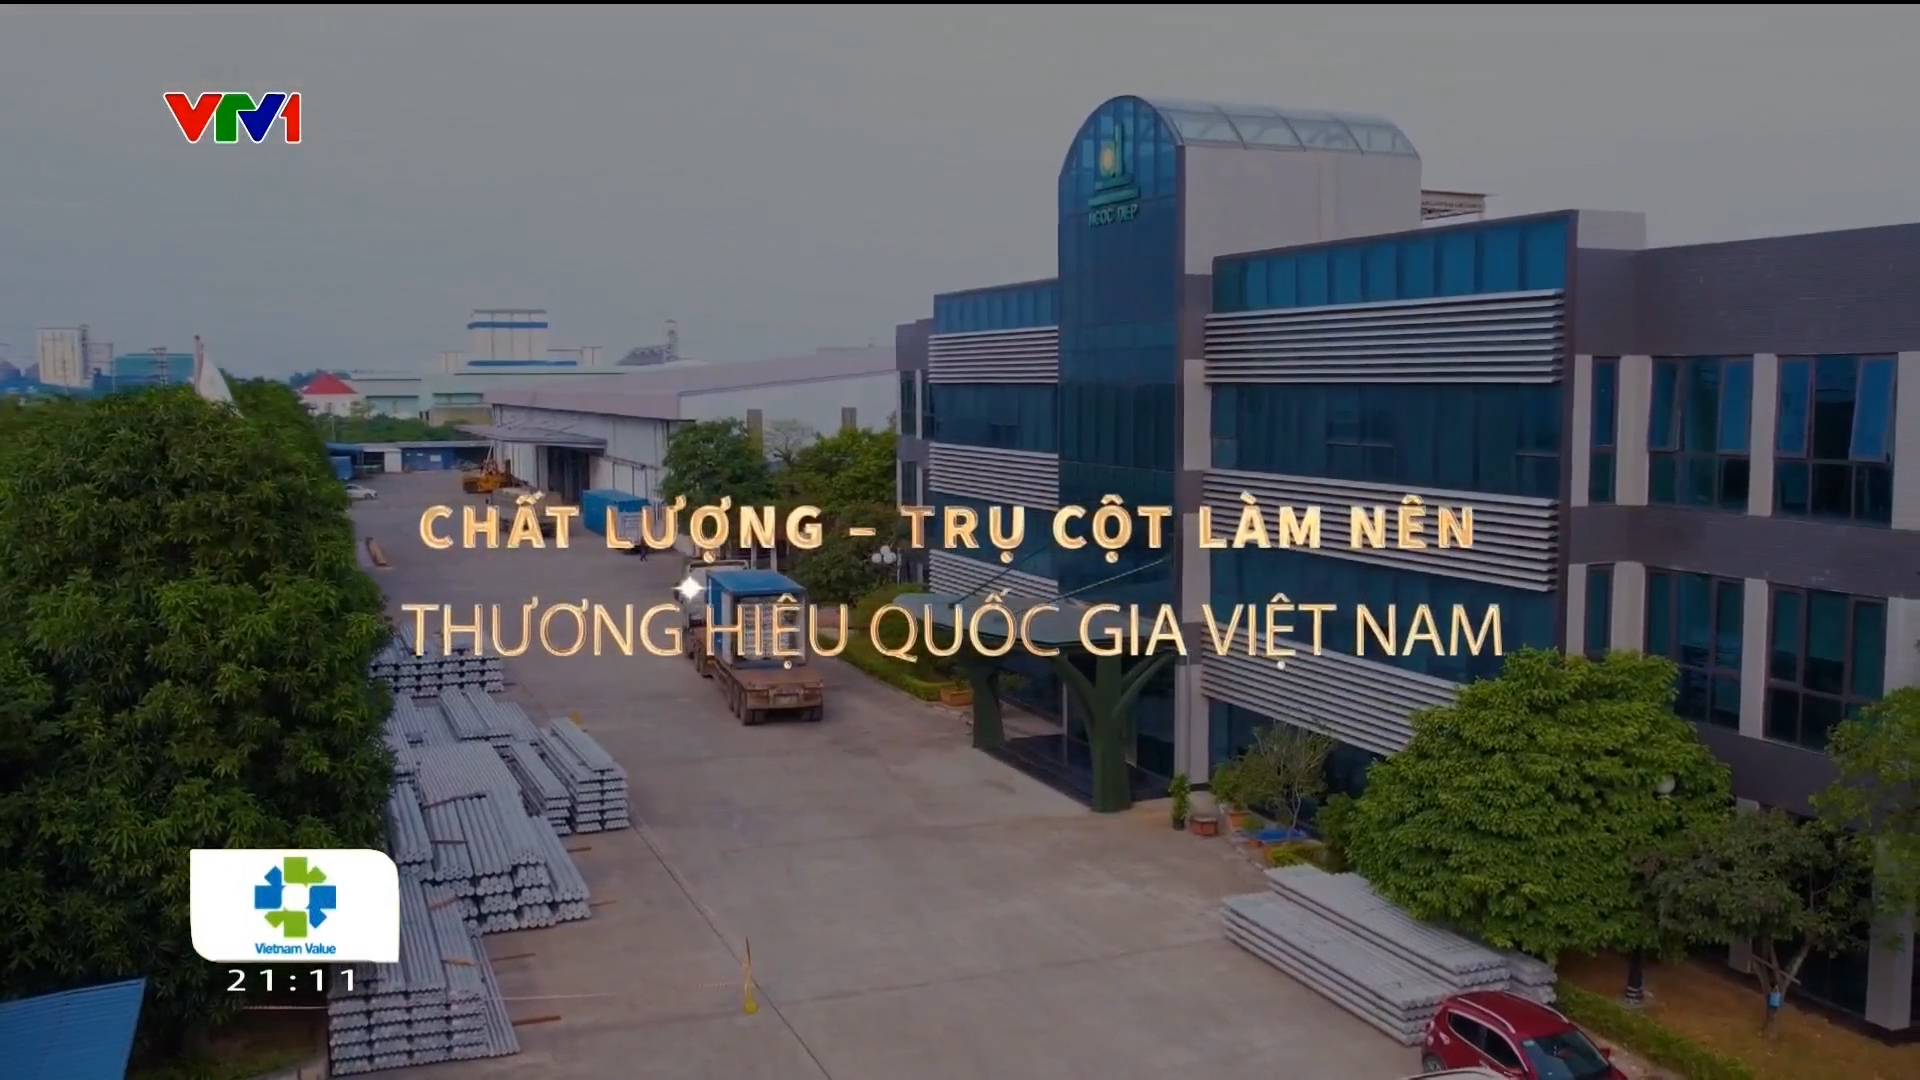 Tập đoàn Ngọc Diệp trong Phóng sự VTV1: Chất lượng - Trụ cột làm nên Thương hiệu quốc gia Việt Nam